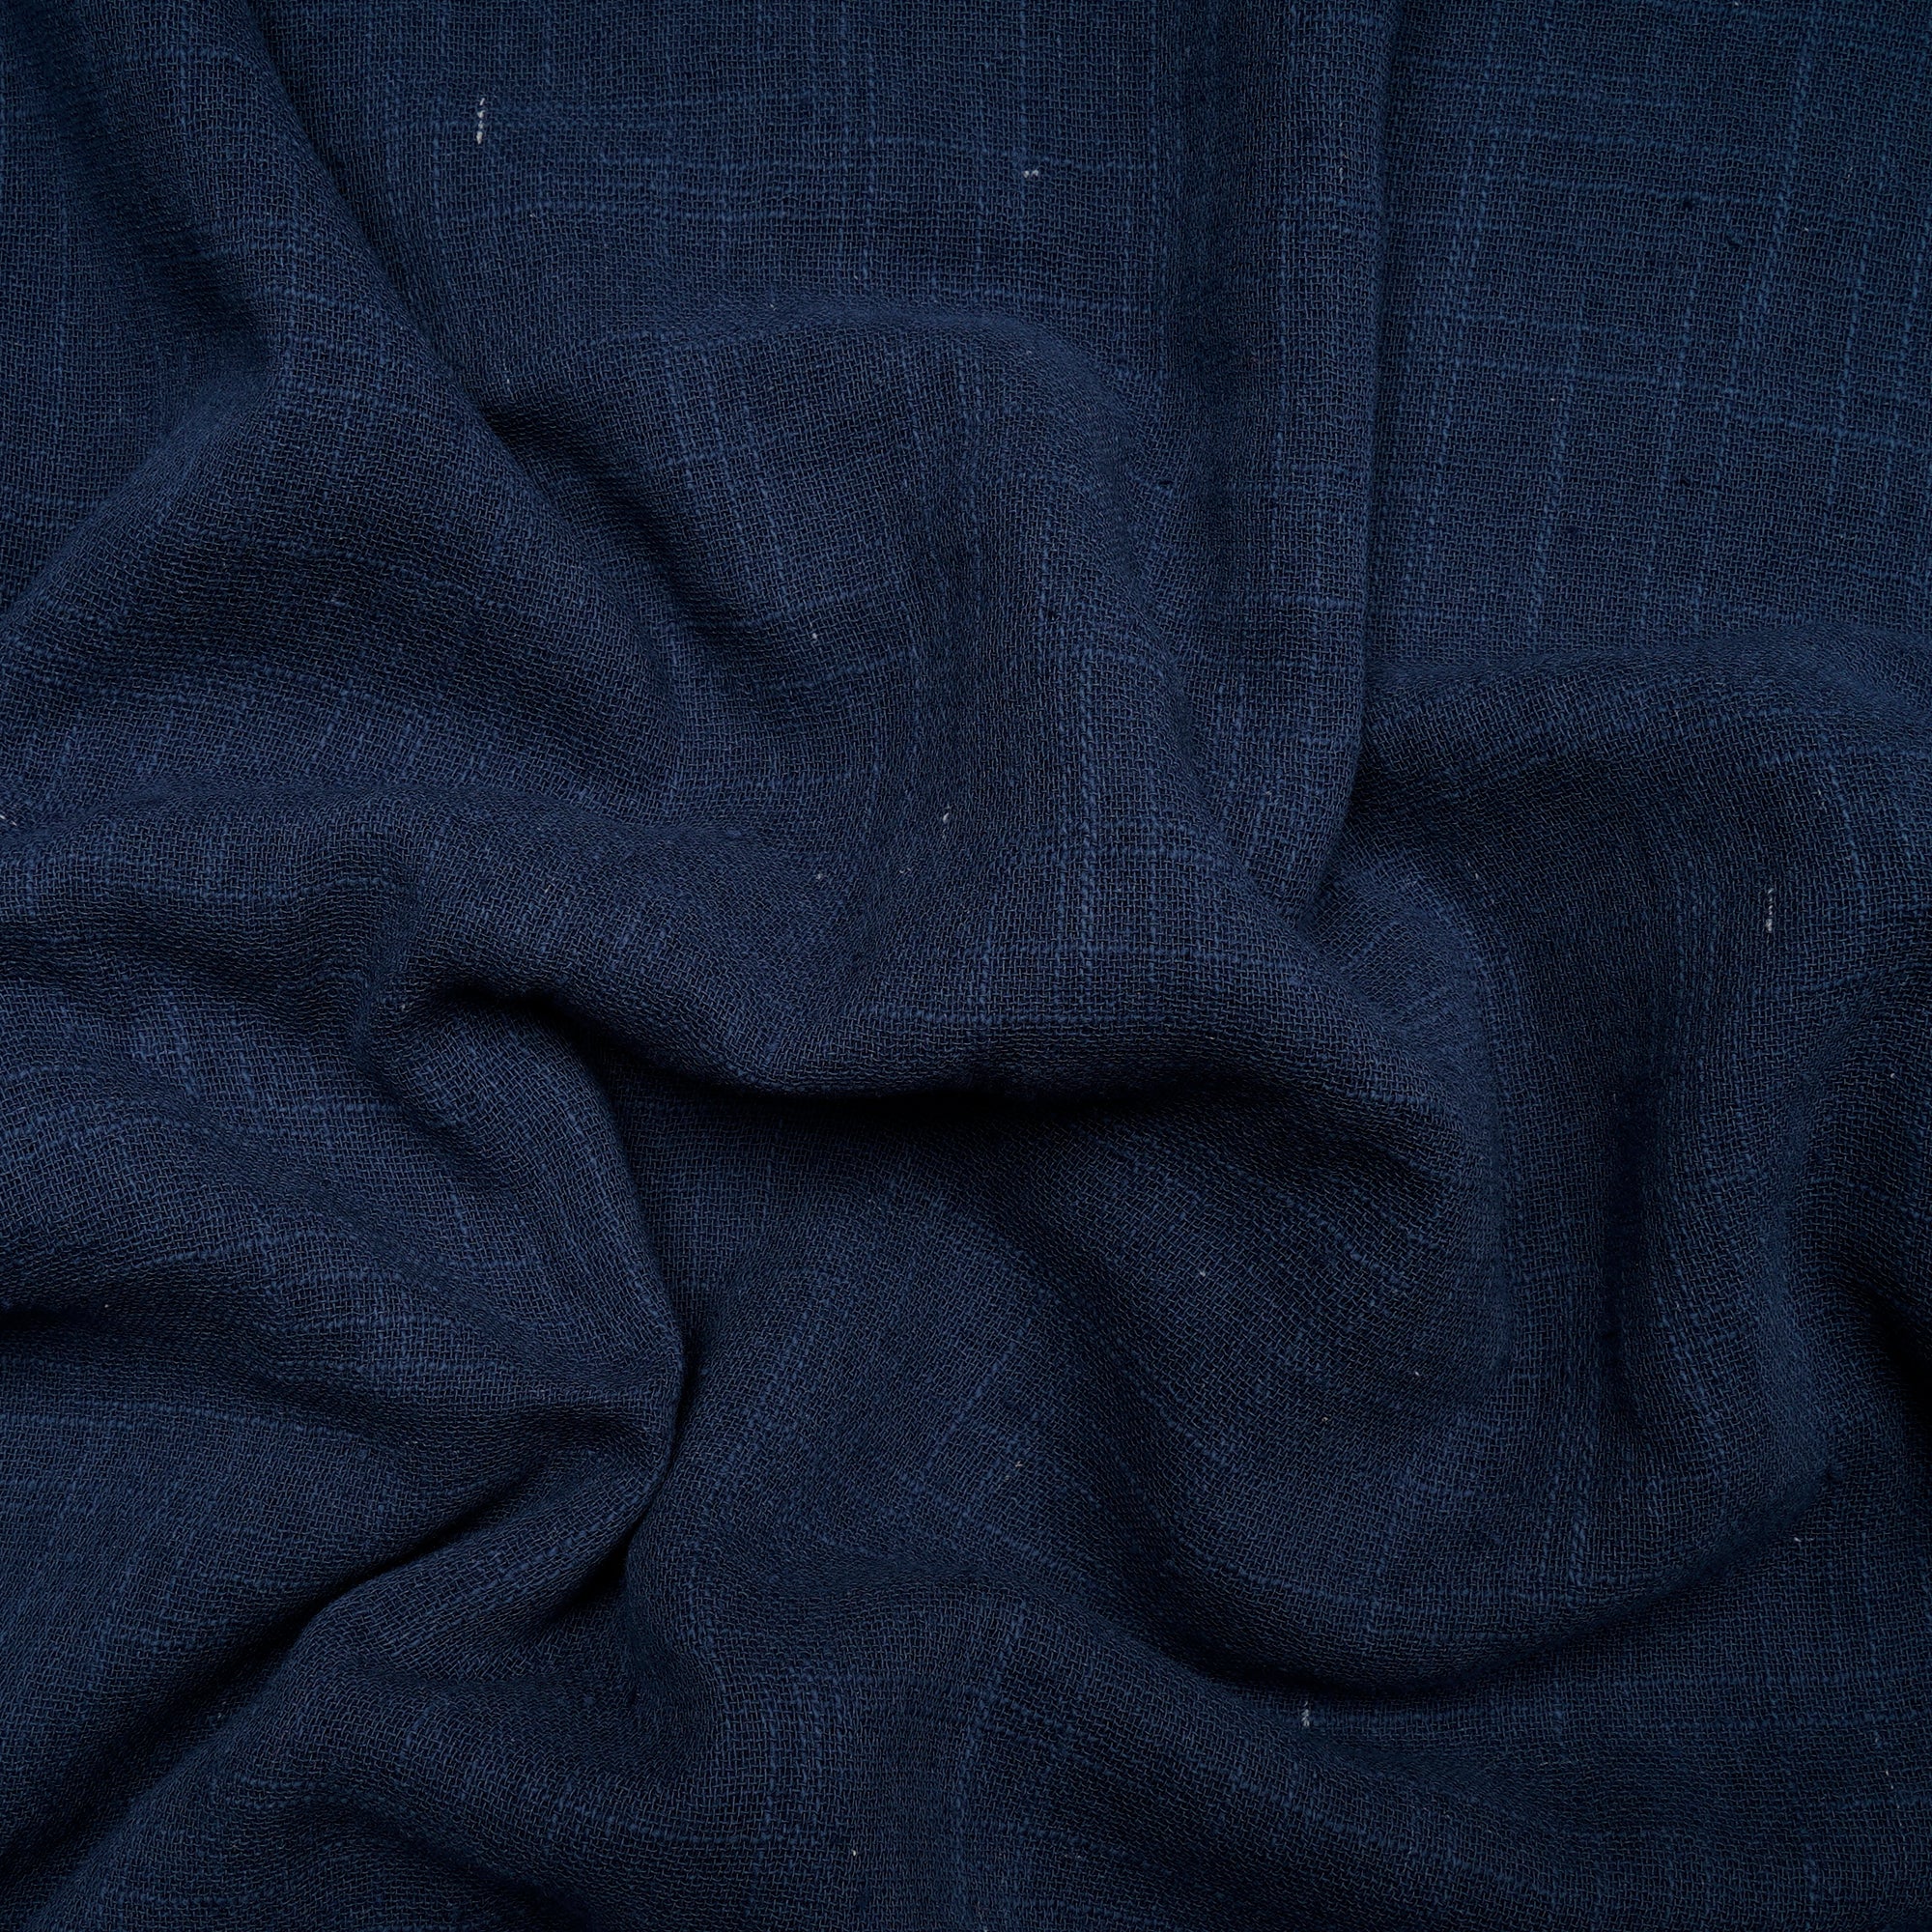 Nvay Blue Mill Dyed Cotton Matka Slub Fabric